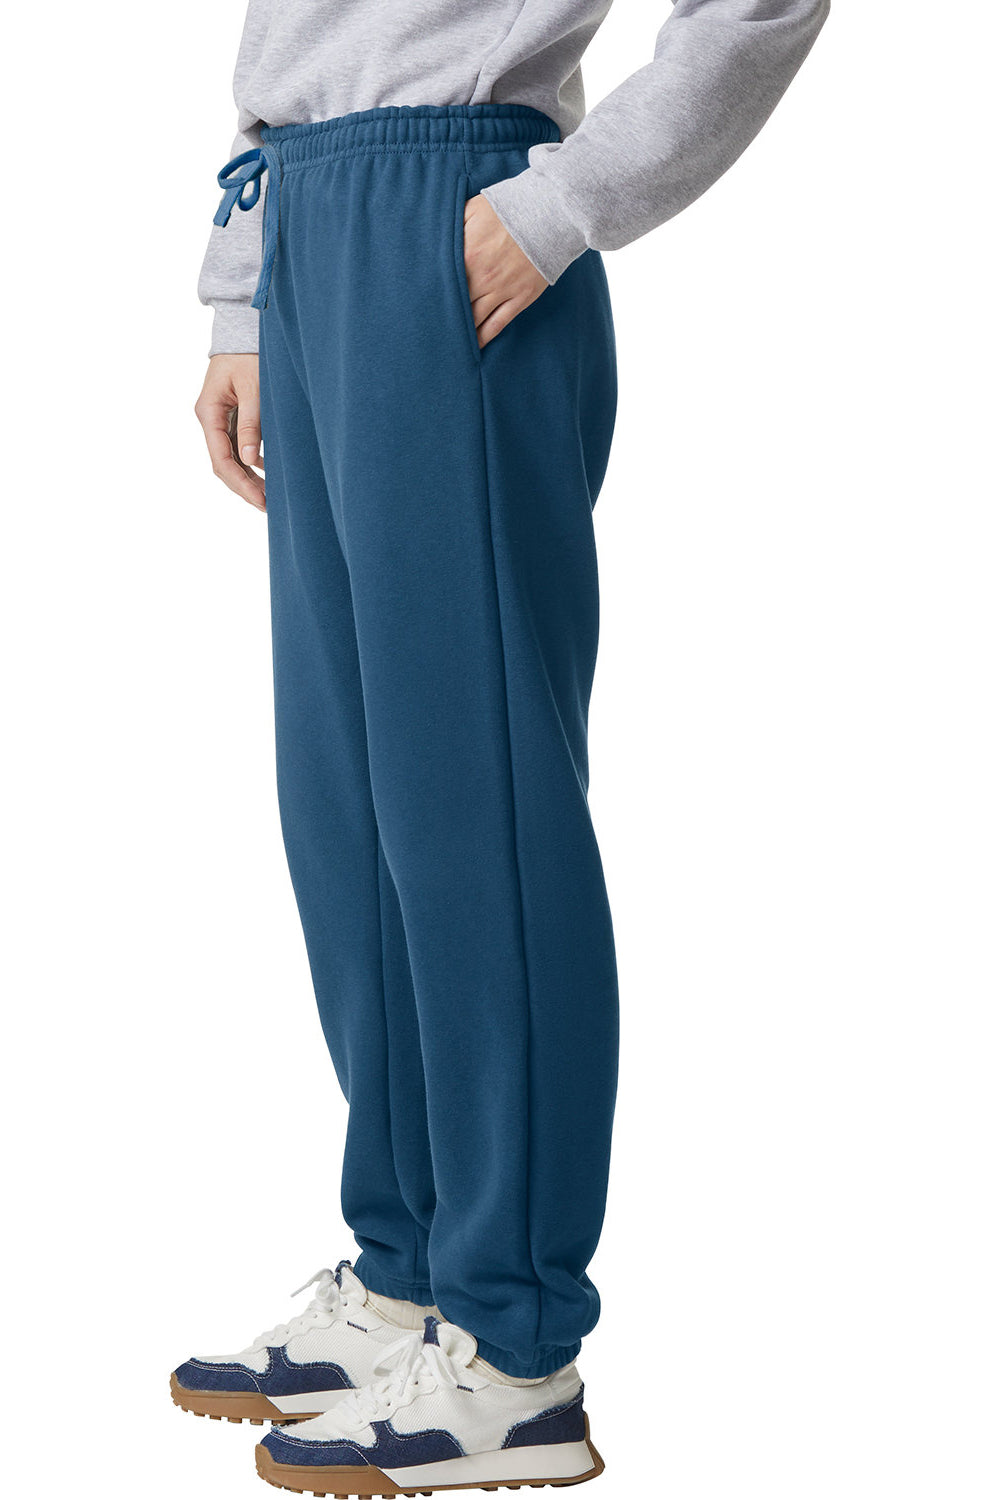 American Apparel RF491 Mens ReFlex Fleece Sweatpants w/ Pockets Sea Blue Model Side